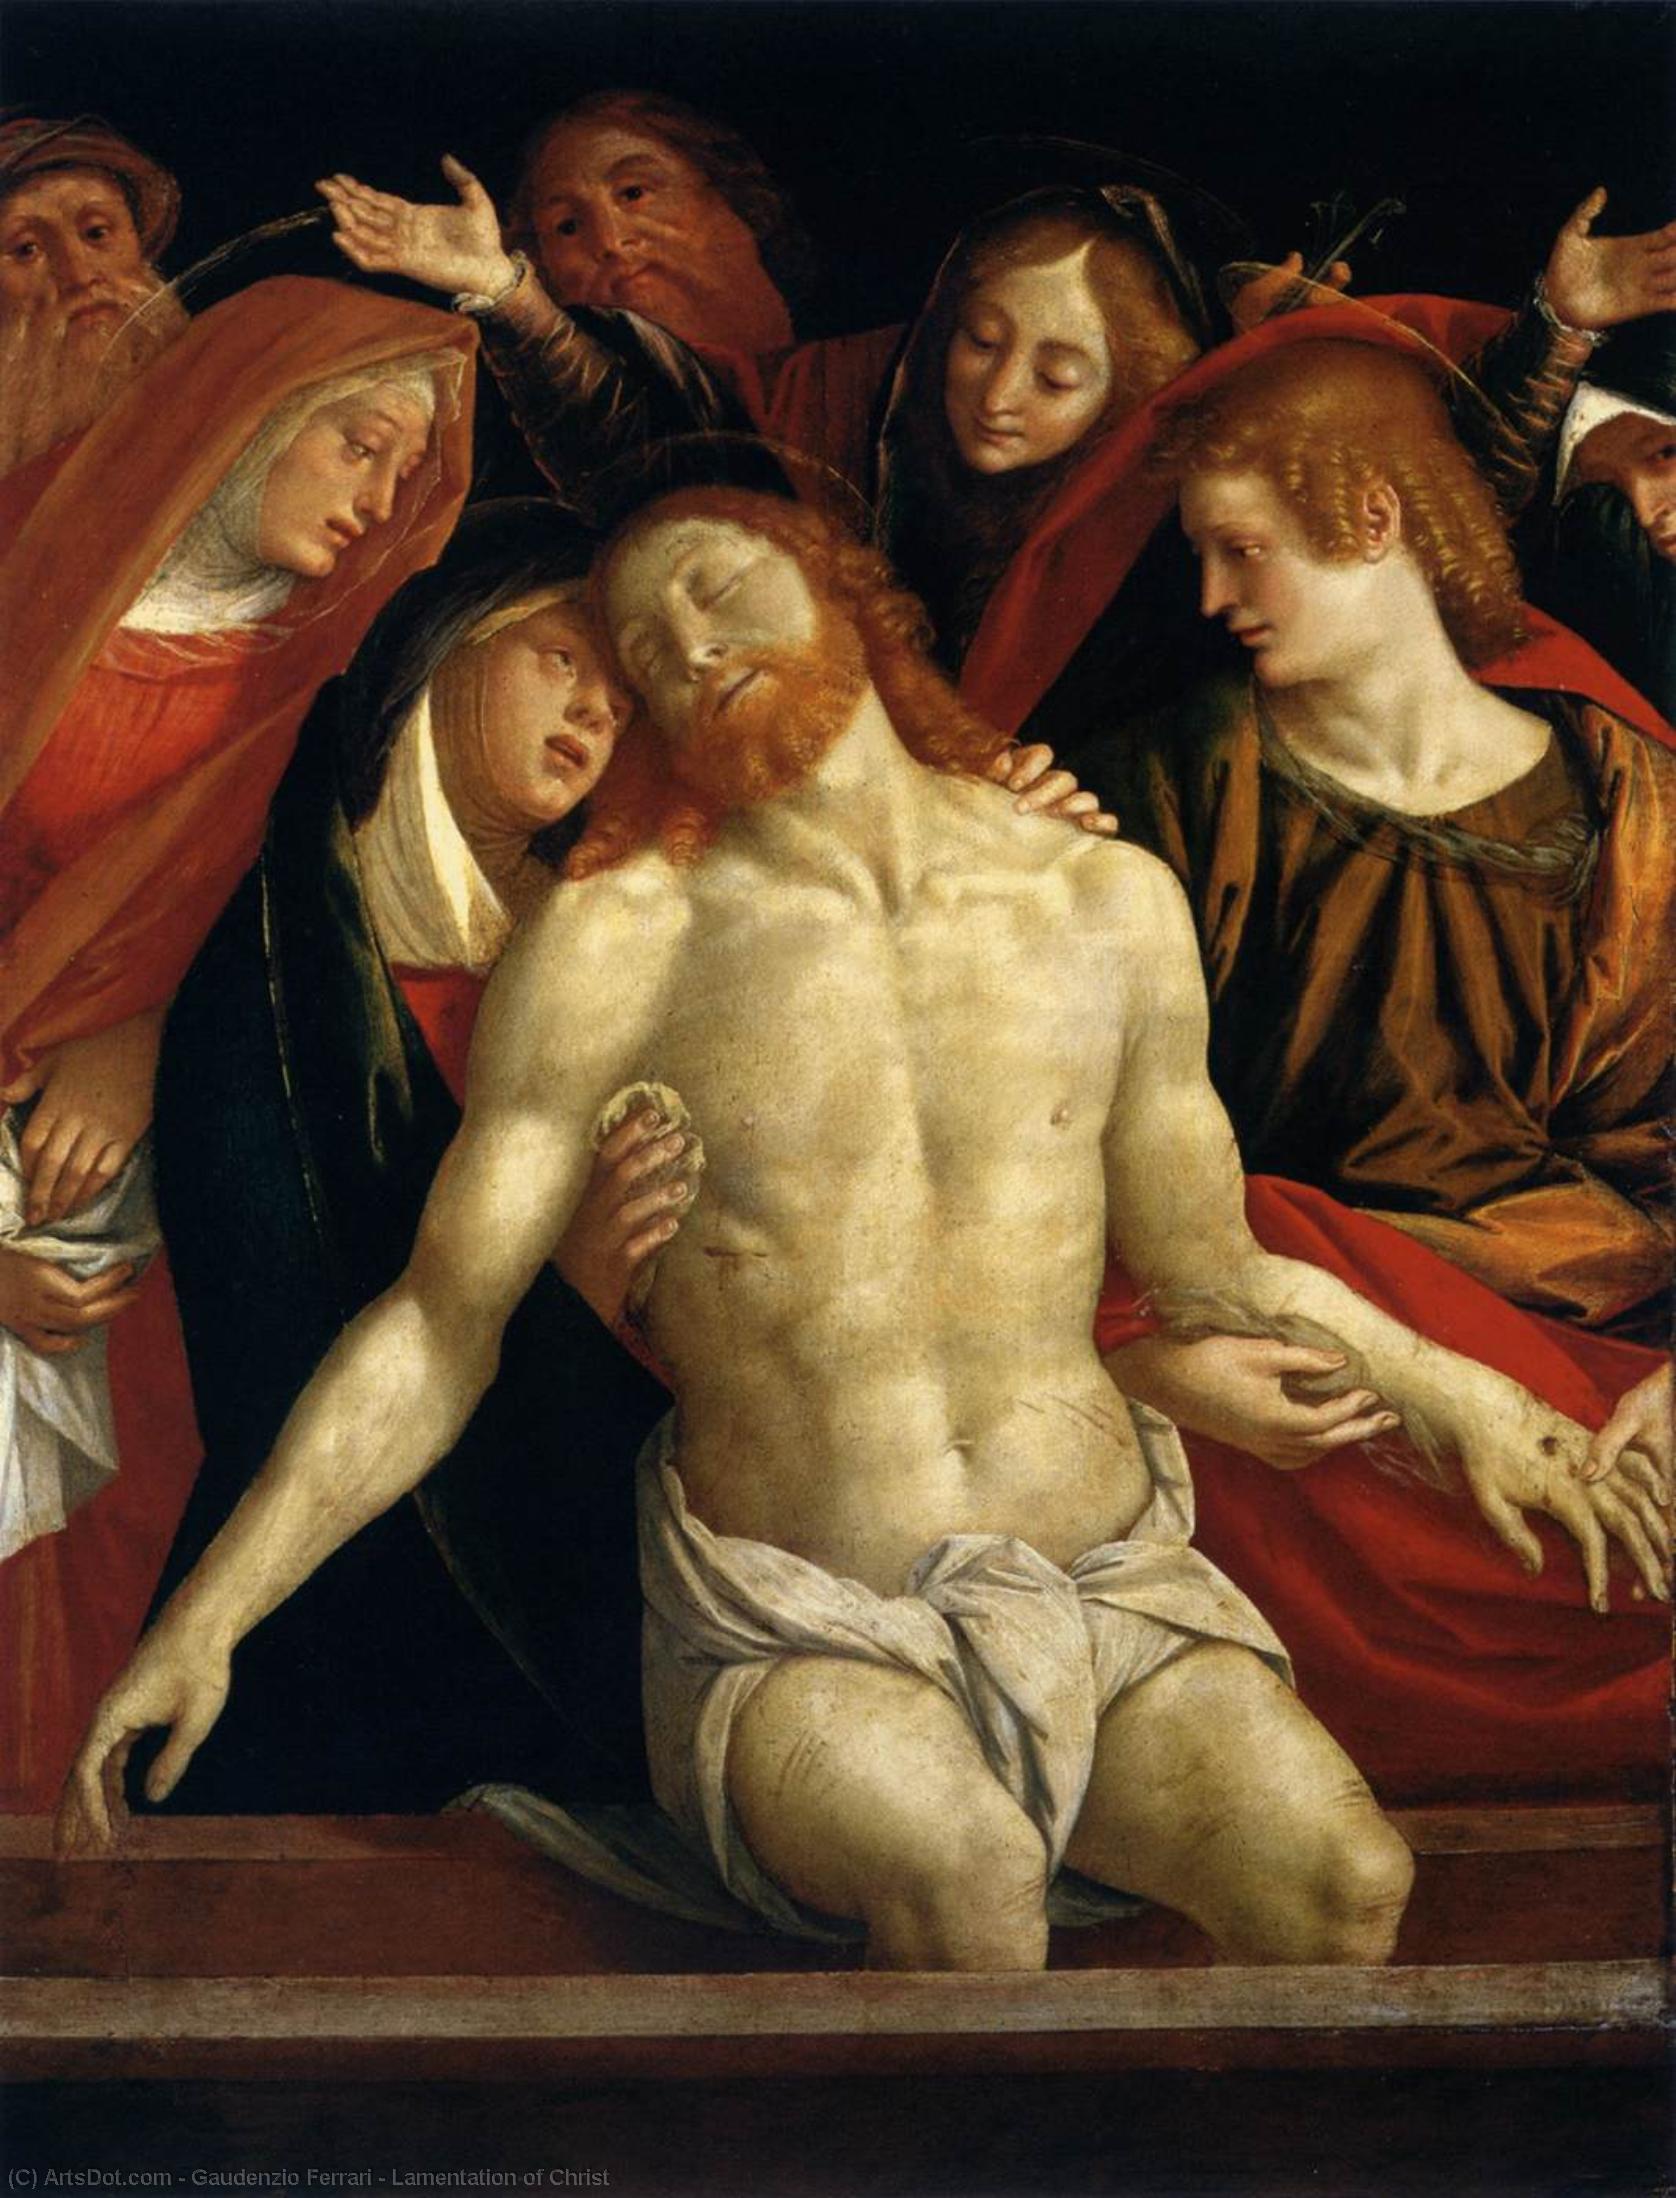 WikiOO.org - Enciclopédia das Belas Artes - Pintura, Arte por Gaudenzio Ferrari - Lamentation of Christ